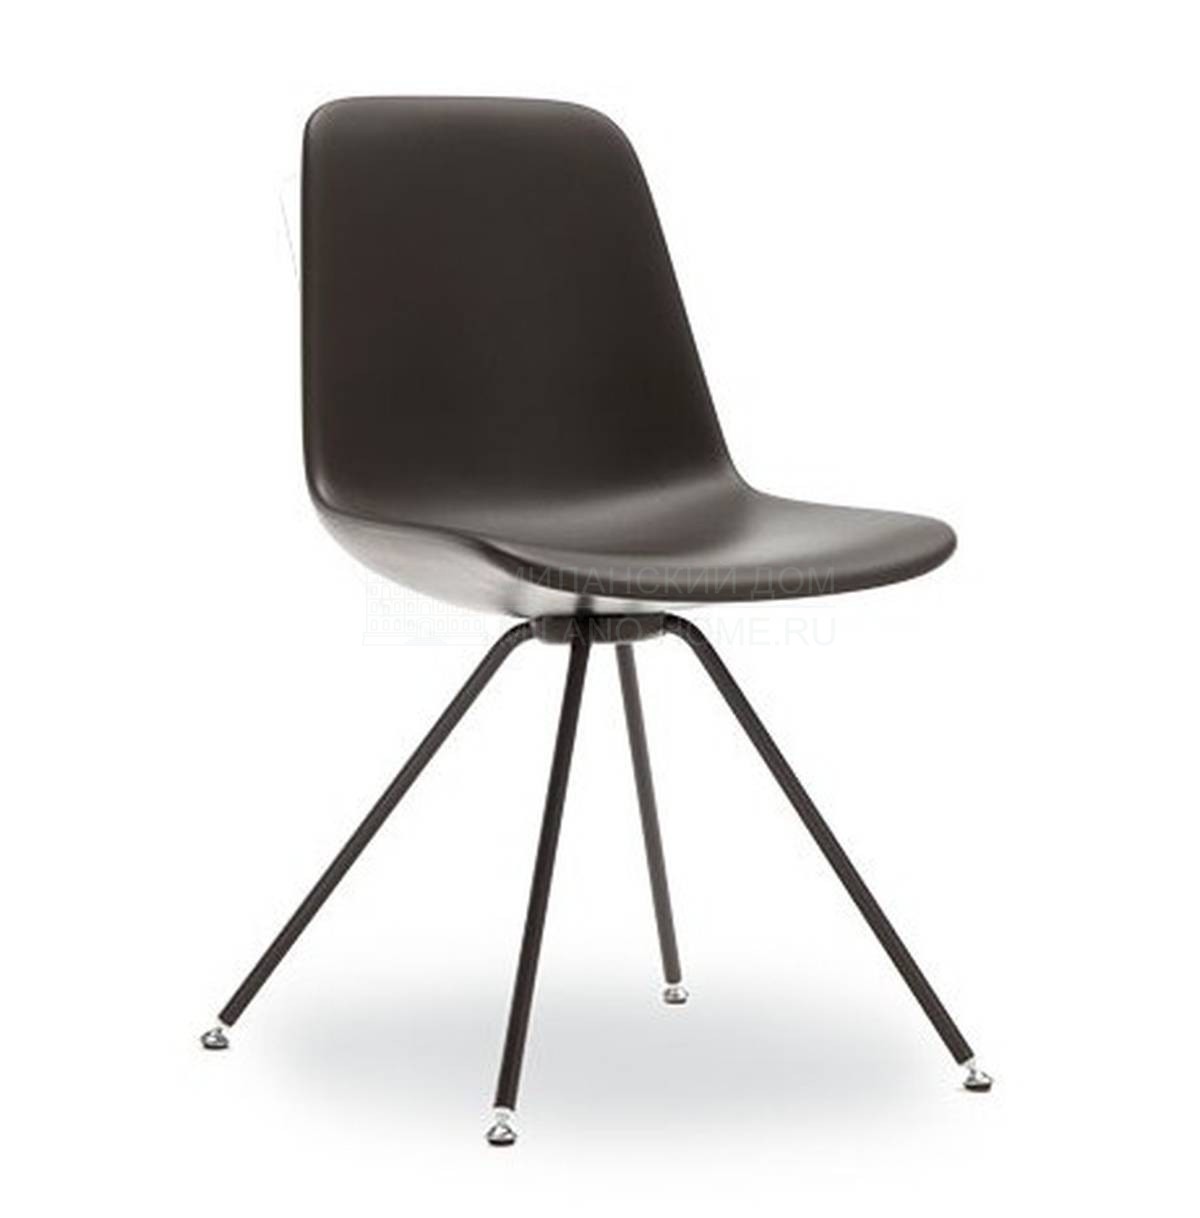 Металлический / Пластиковый стул Step - soft из Италии фабрики TONON